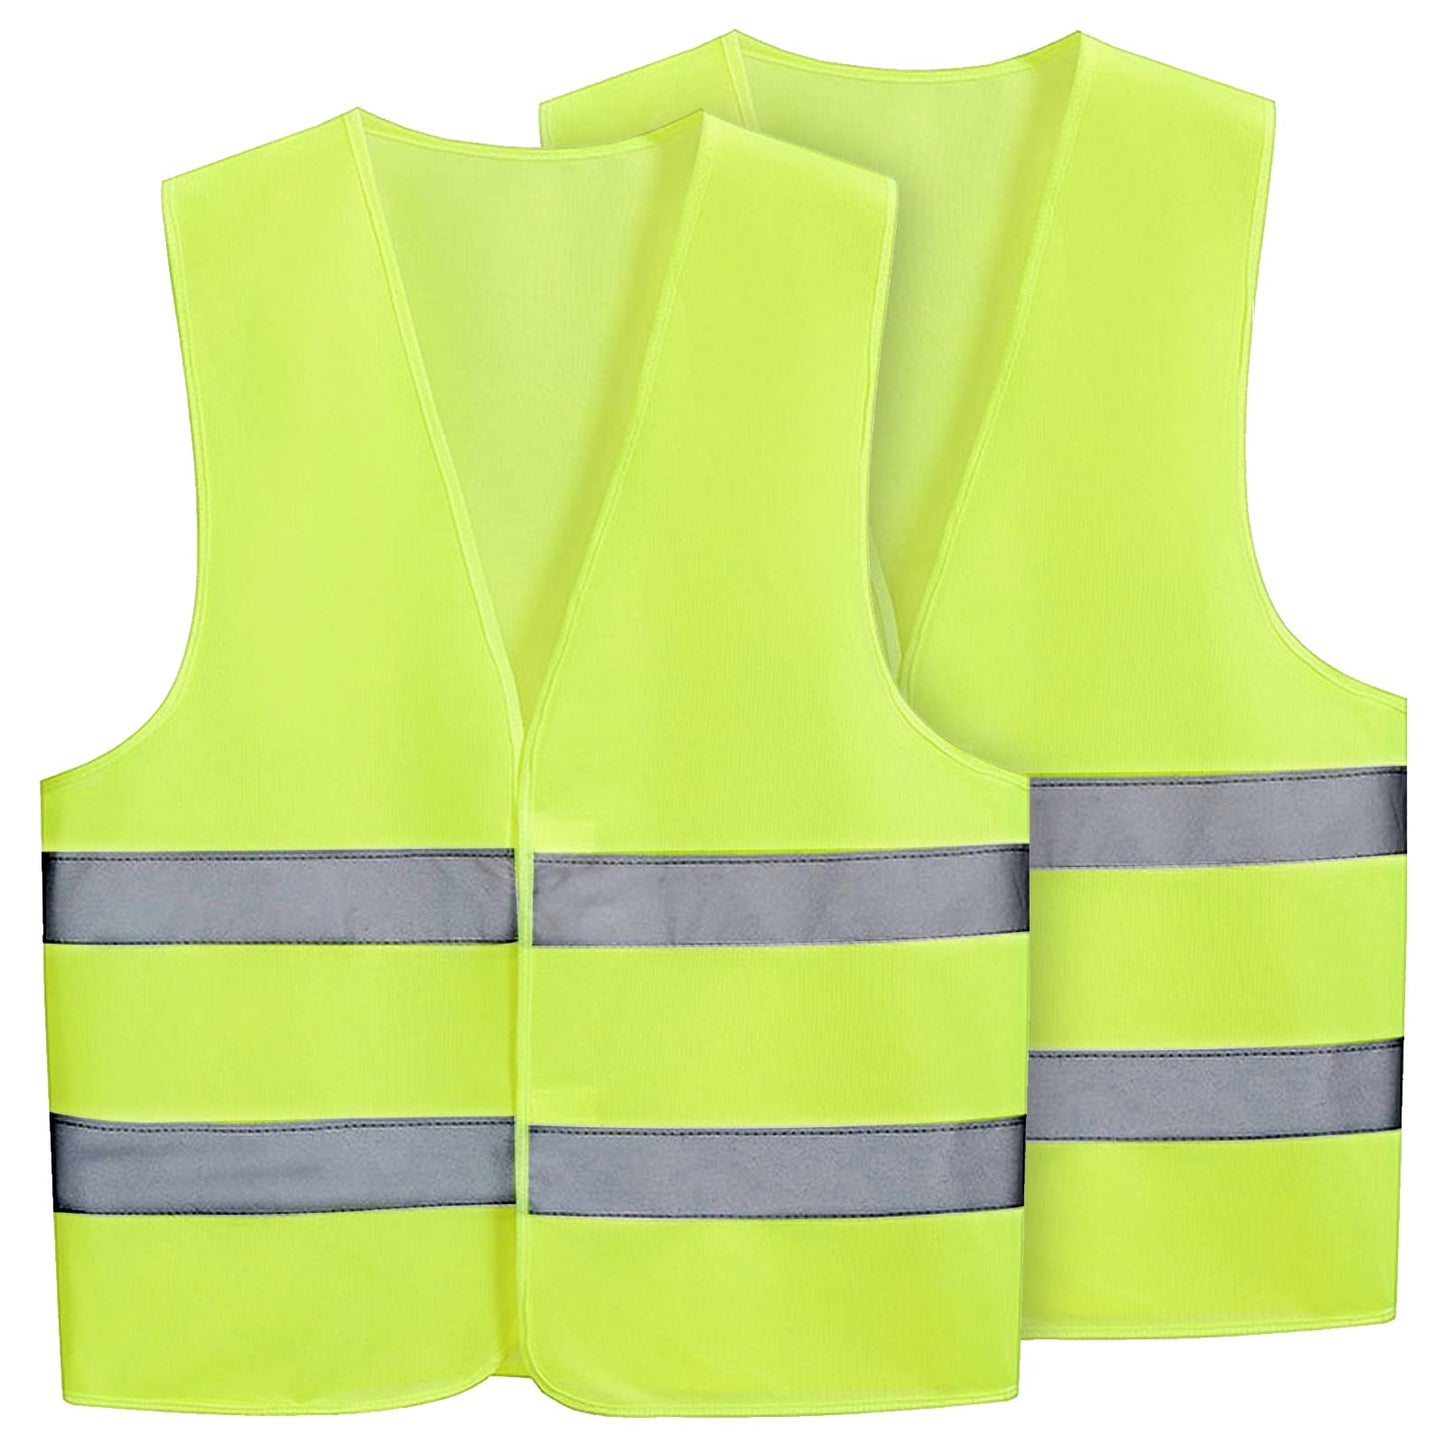 Hi Vis Vests 2 Pcs Hi viz Vests Yellow Reflective Jacket Vest High Vis Vests, High Visibility Safety Waistcoat, One size, High Visibility Reflective Safety Security Vest for Men and Women